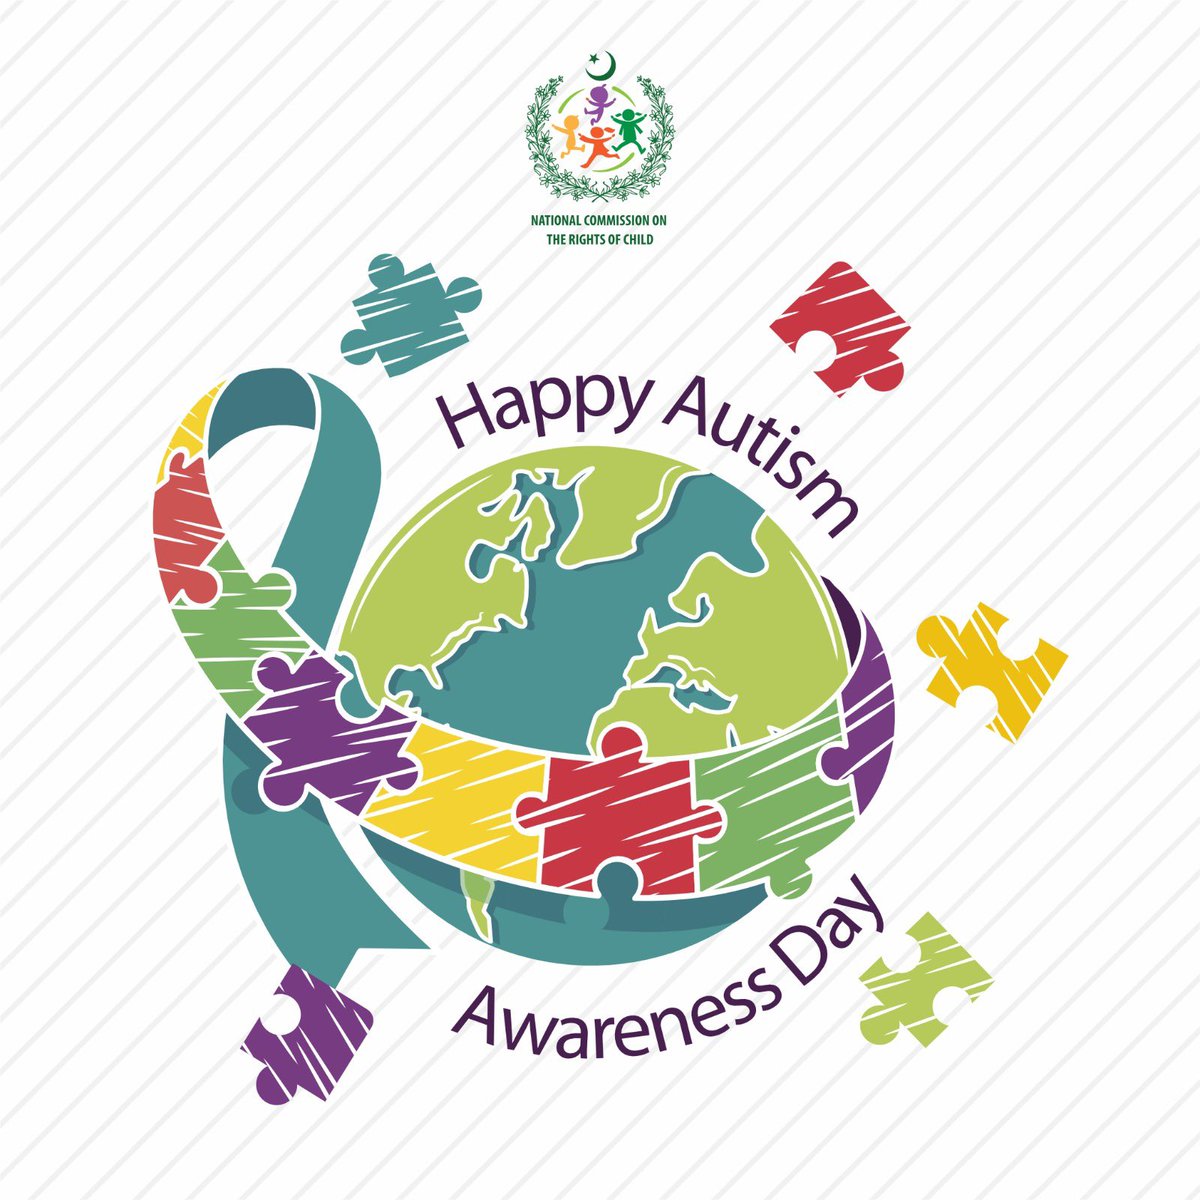 Happy Autism Awareness Day!